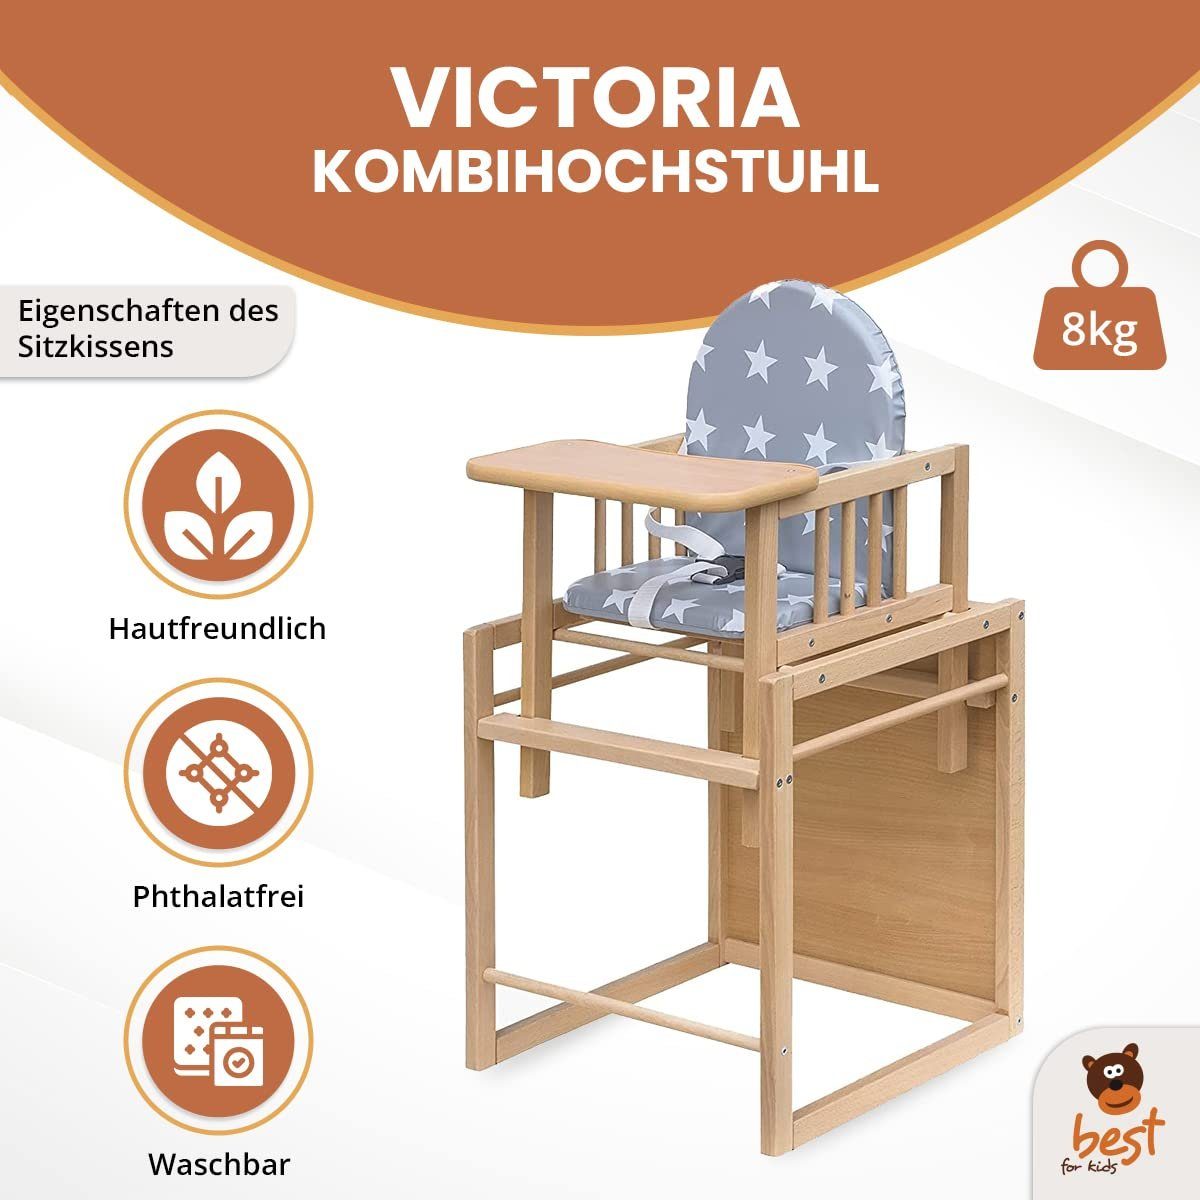 Best for Kids Kombihochstuhl zur Victoria, umbaubar leicht Stuhl-Tisch-Kombination